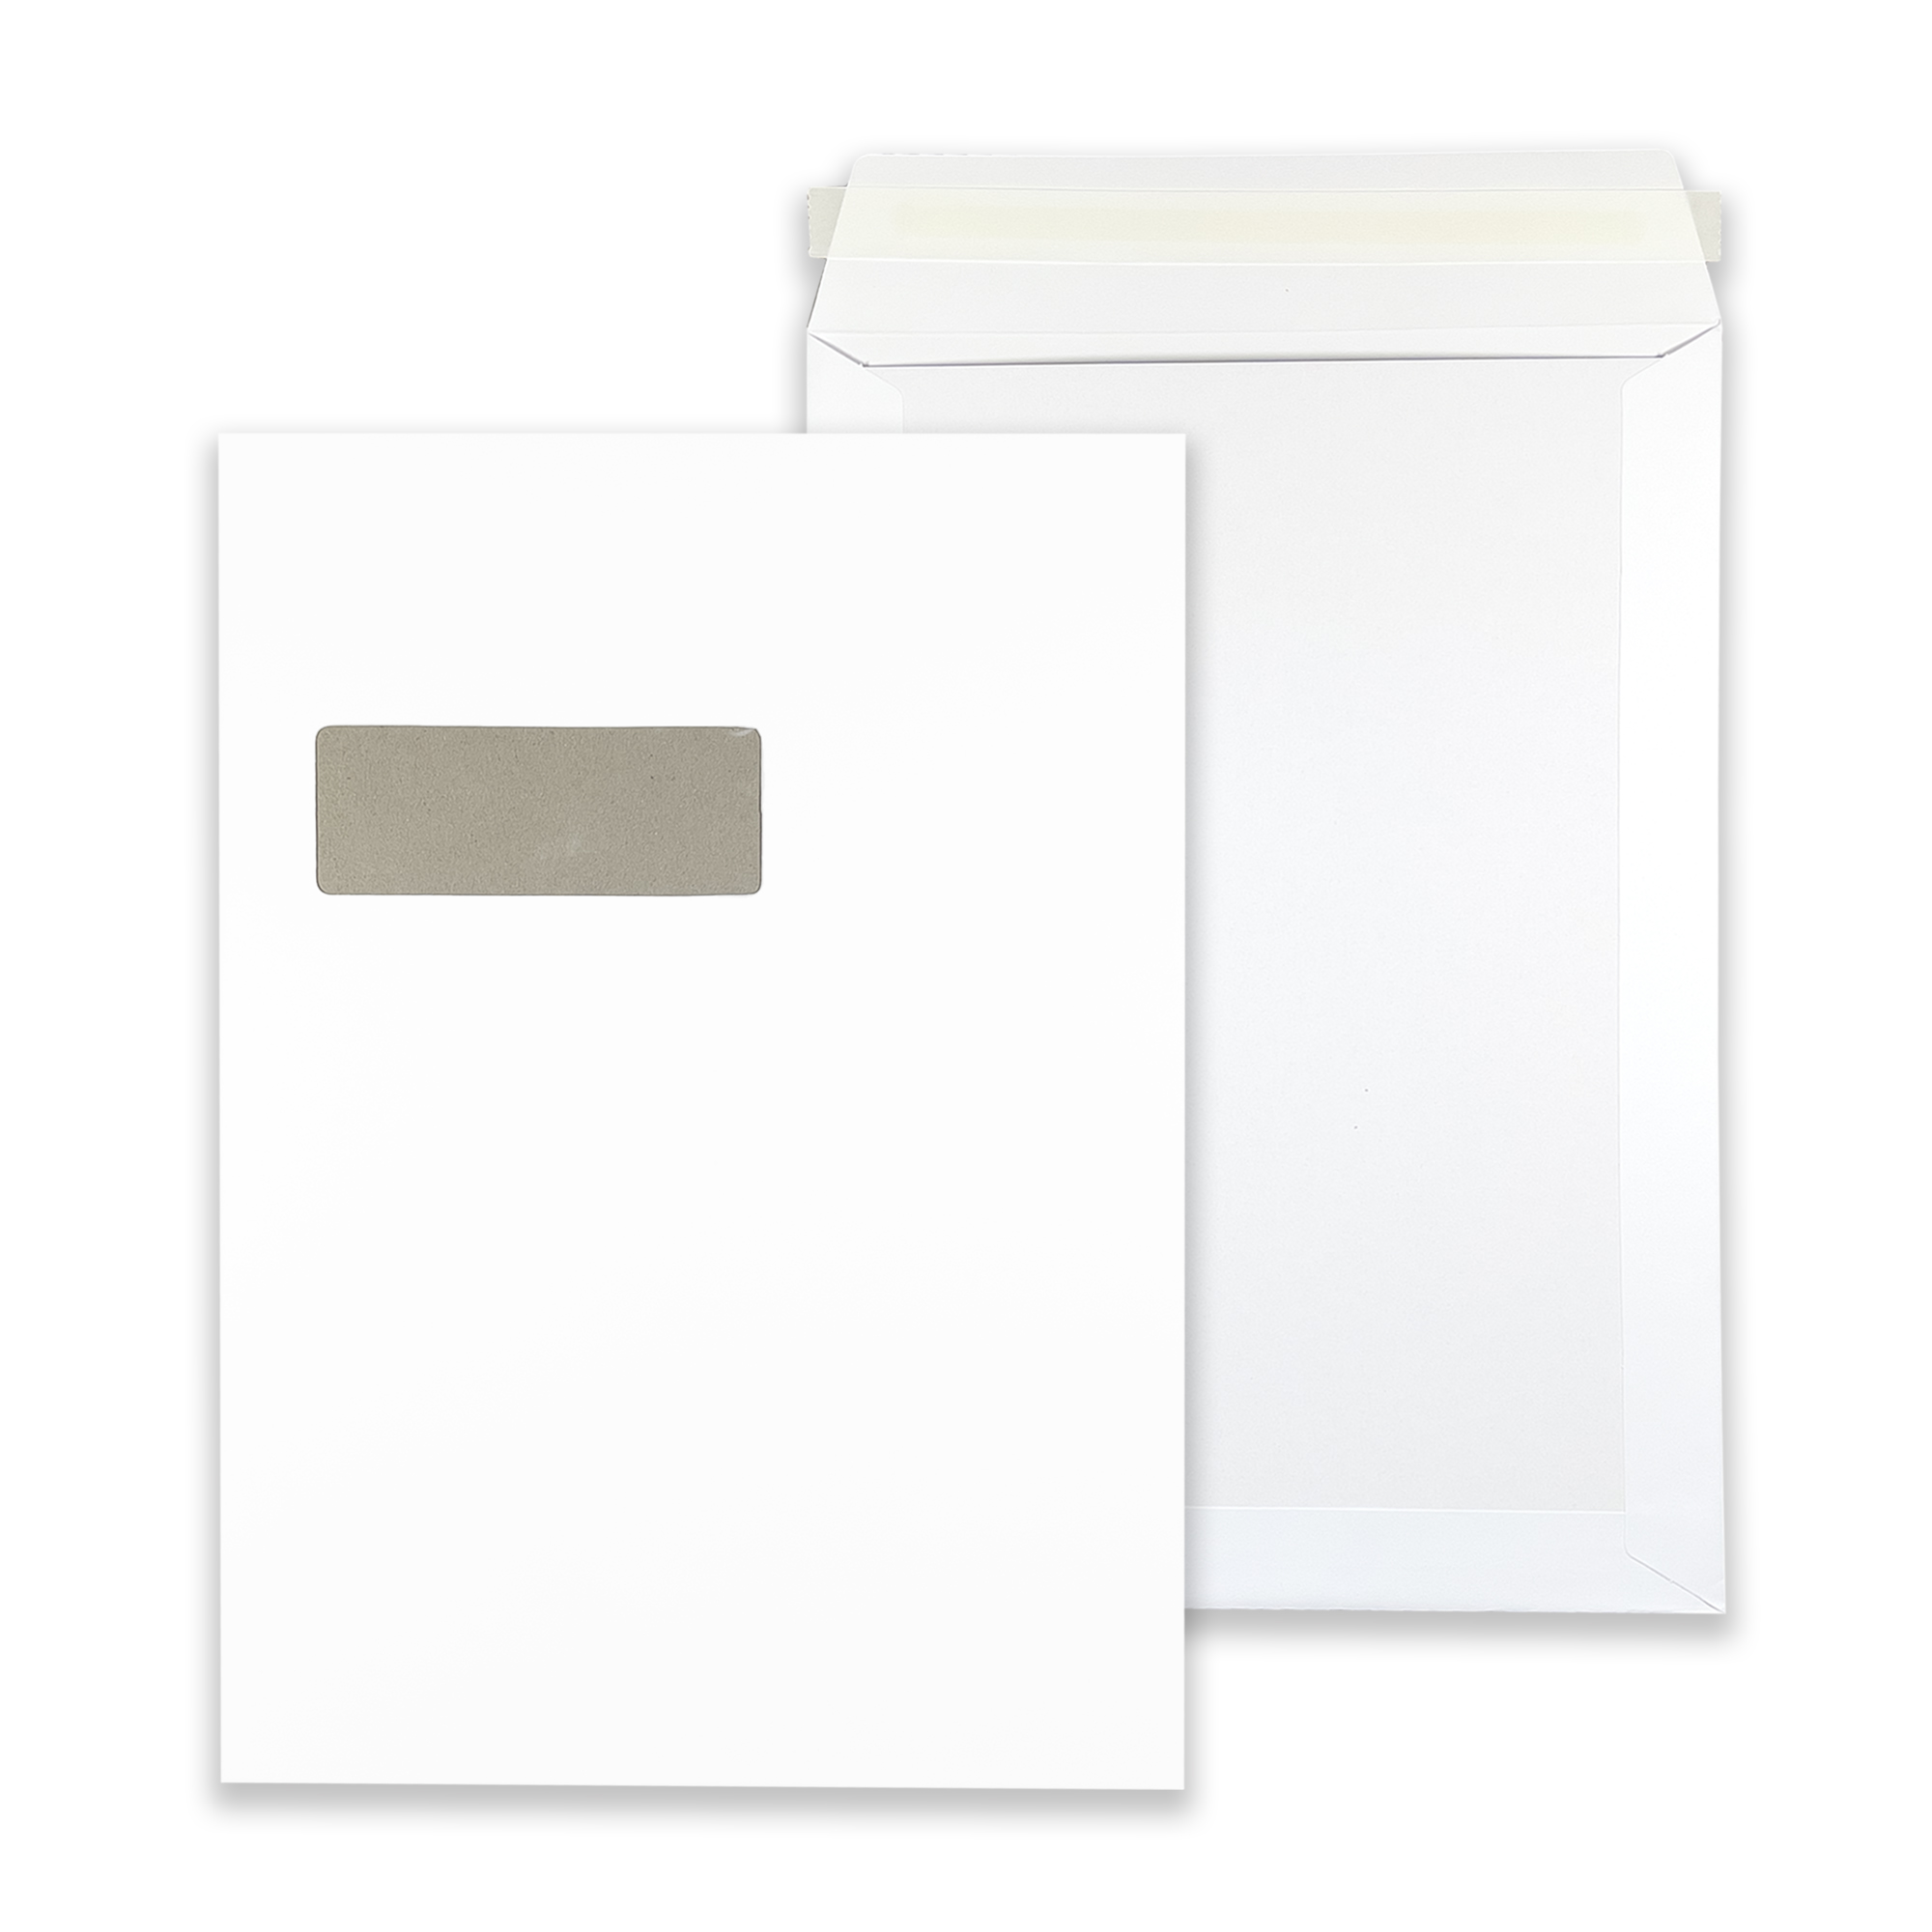 rectangle-white-board-back-window-pocket-envelopes-together